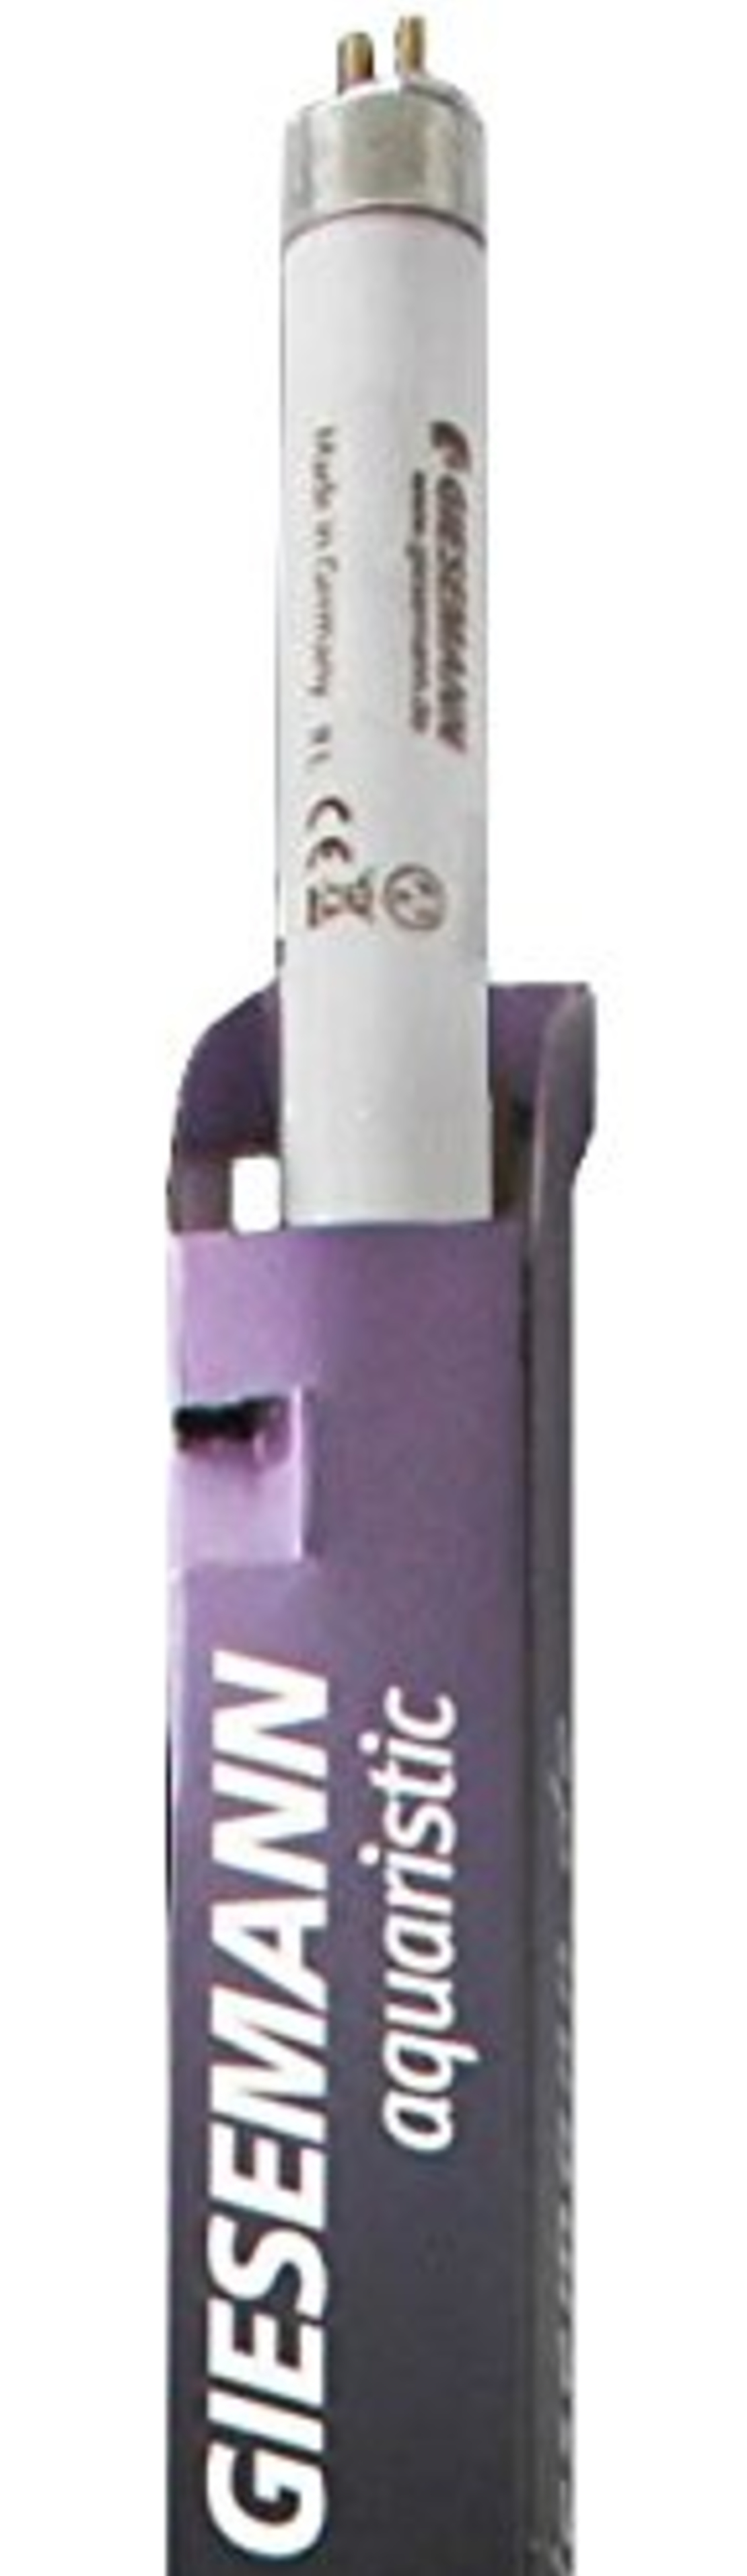 GIESEMANN Super Purple T5 80w |  נורת T5 למלוחים בגוון סגול